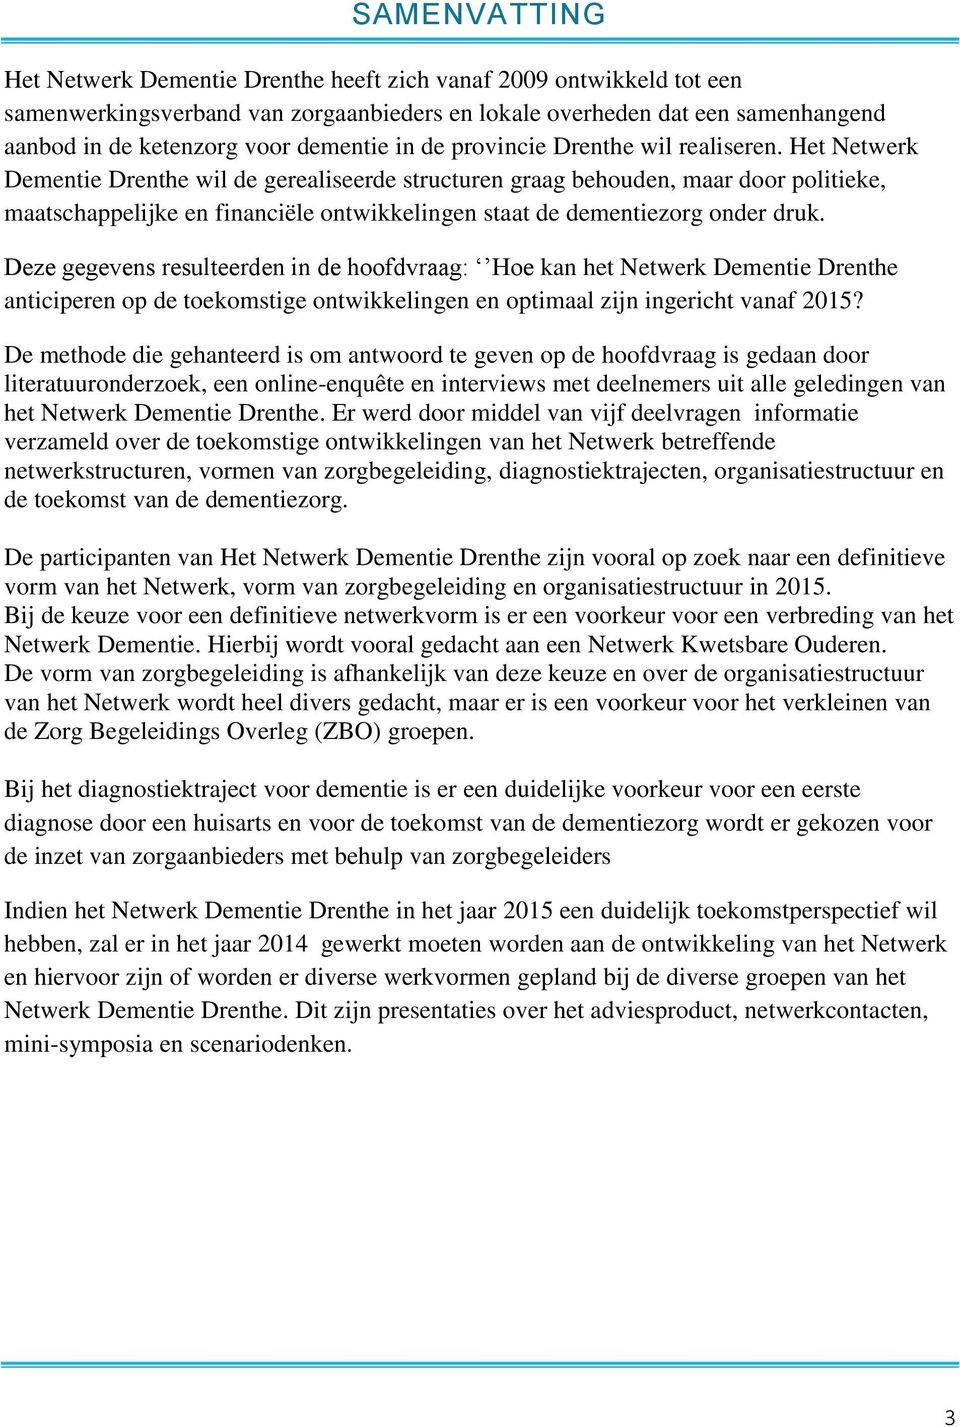 Het Netwerk Dementie Drenthe wil de gerealiseerde structuren graag behouden, maar door politieke, maatschappelijke en financiële ontwikkelingen staat de dementiezorg onder druk.